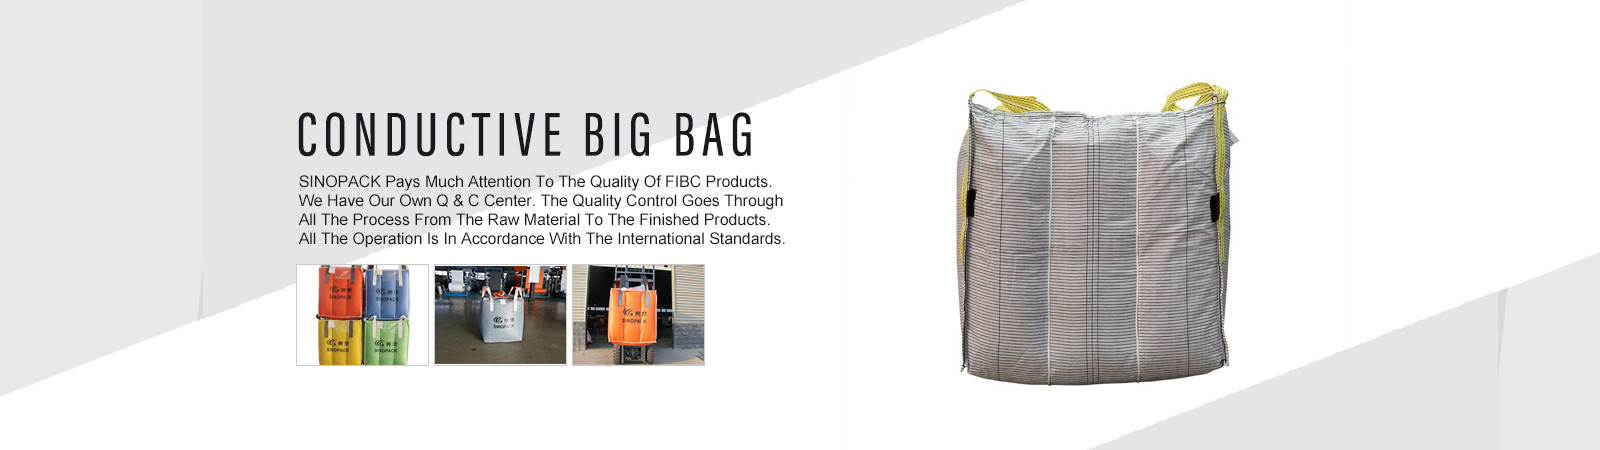 quality Big Bag FIBC factory